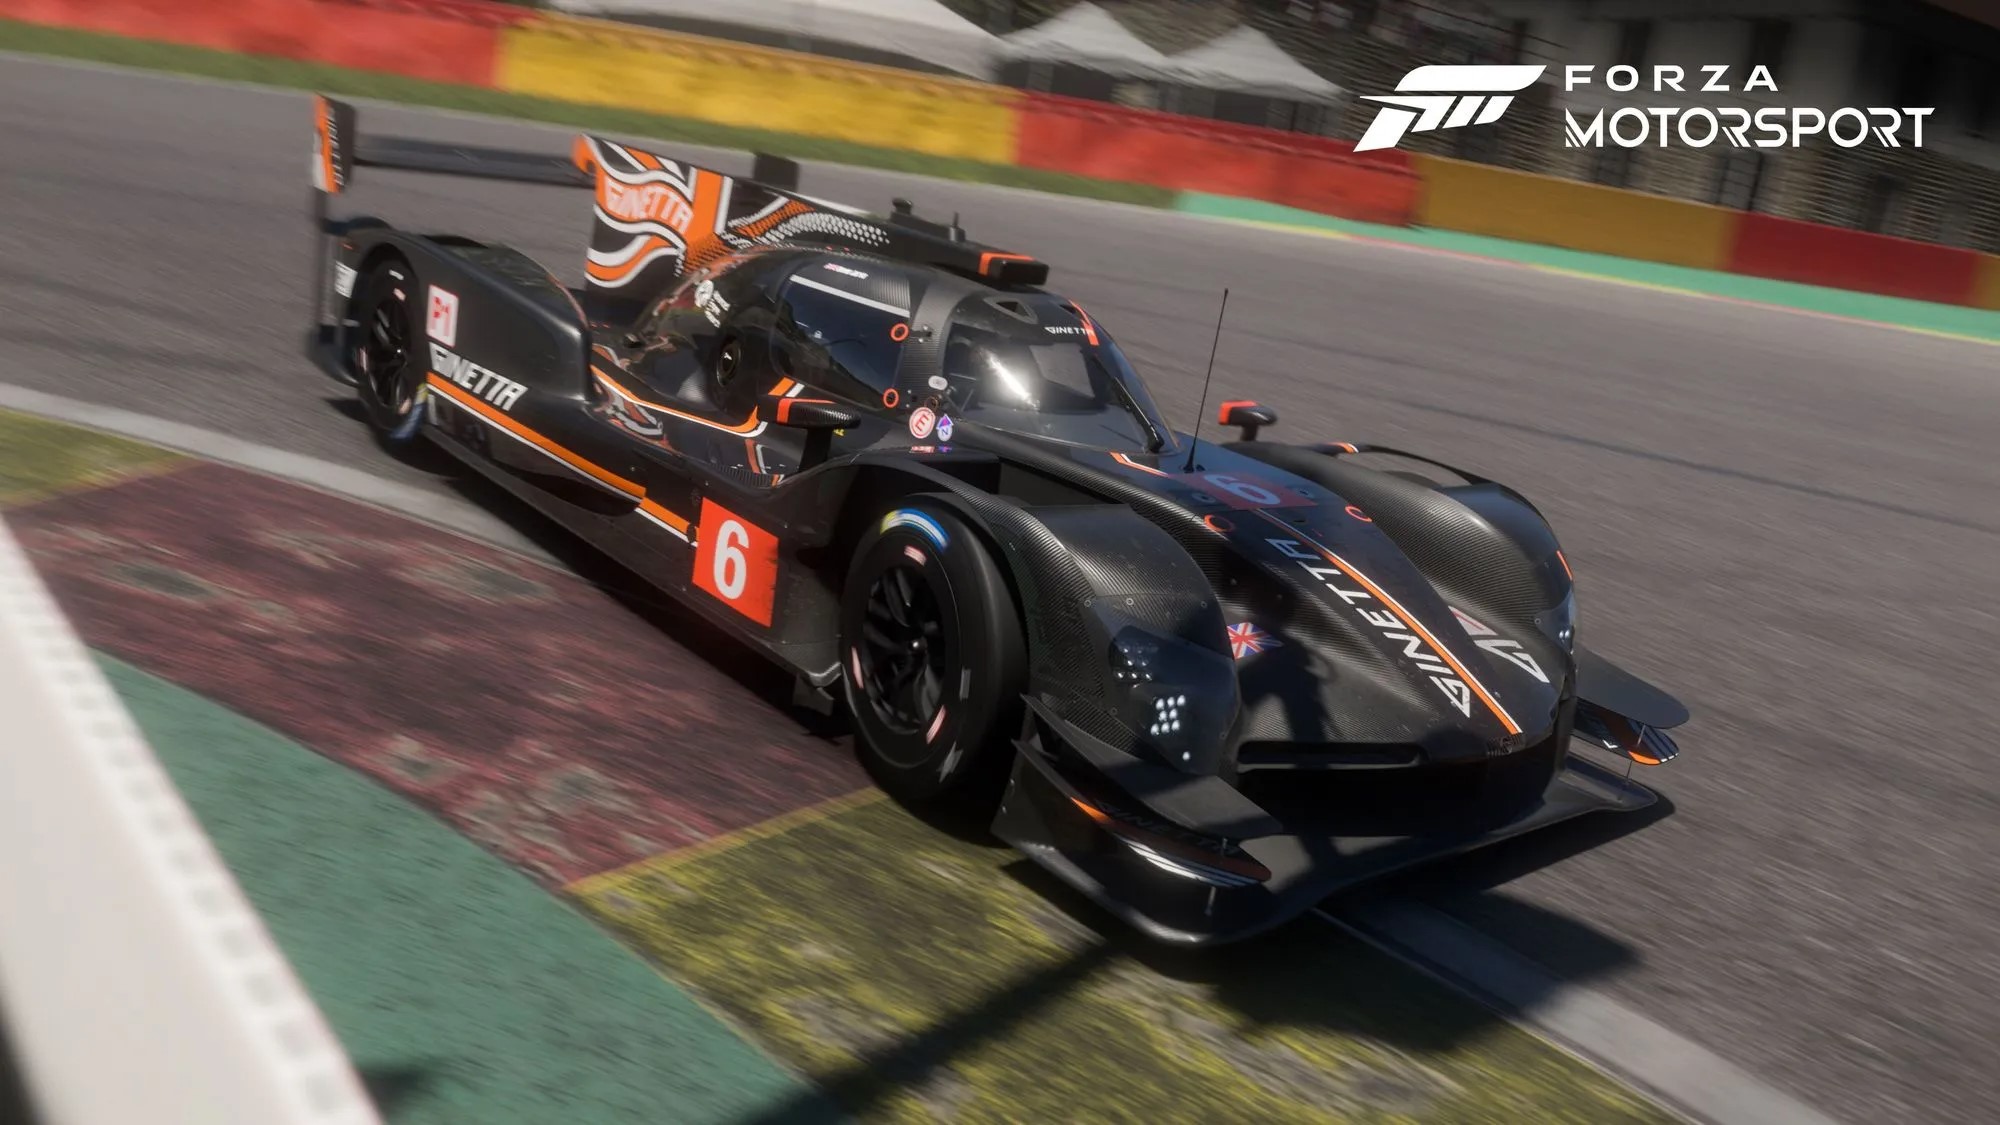 Grosse mise à jour de Forza Motorsport : nouveau circuit, livrées